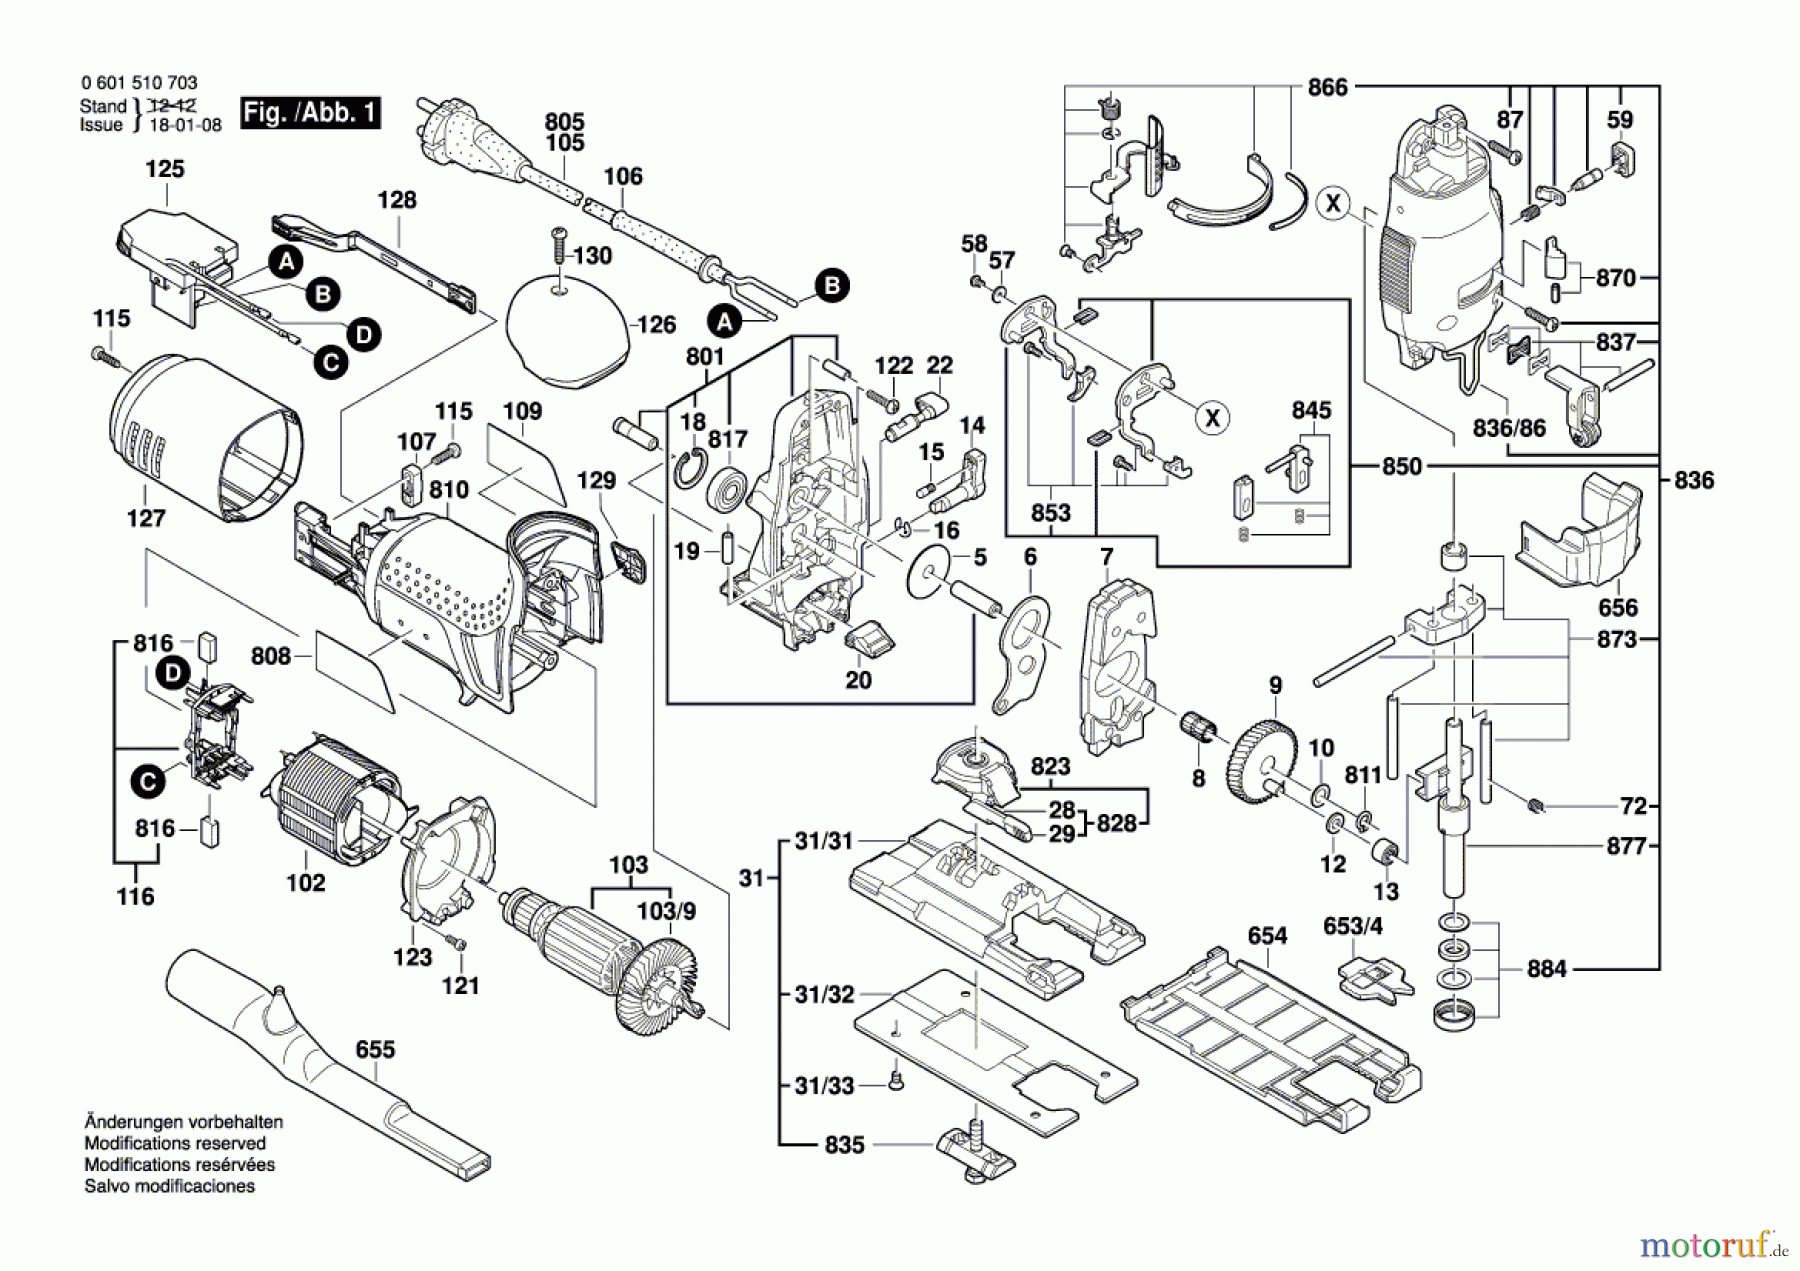  Bosch Werkzeug Stichsäge STP 135 S Seite 1